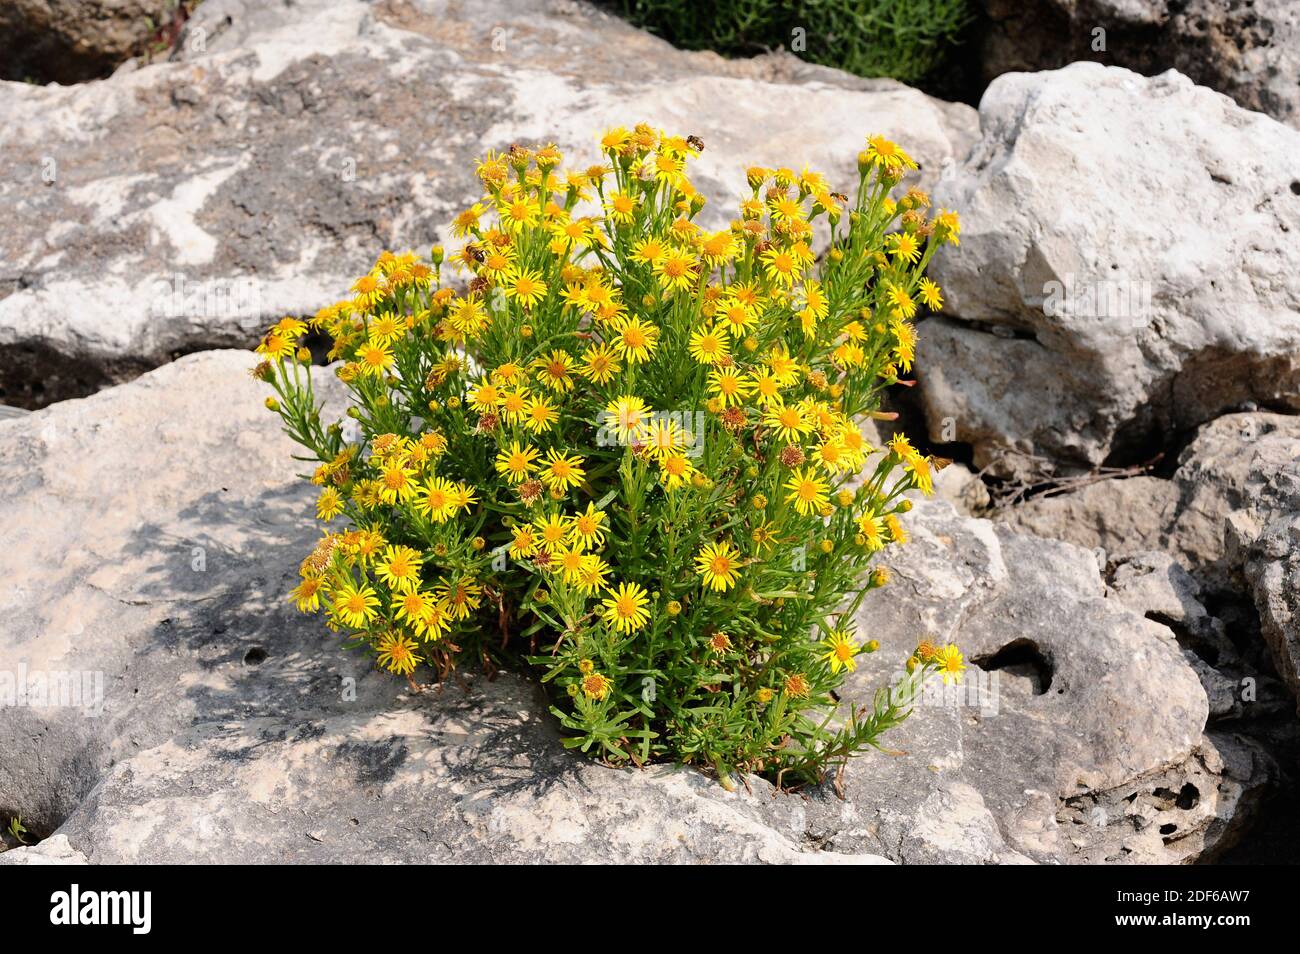 El zafiro dorado (Inula chrithmoides o Limbarda chrithmoides) es una hierba perenne nativa del sur y oeste de Europa. Es semi-suculento y crece Foto de stock